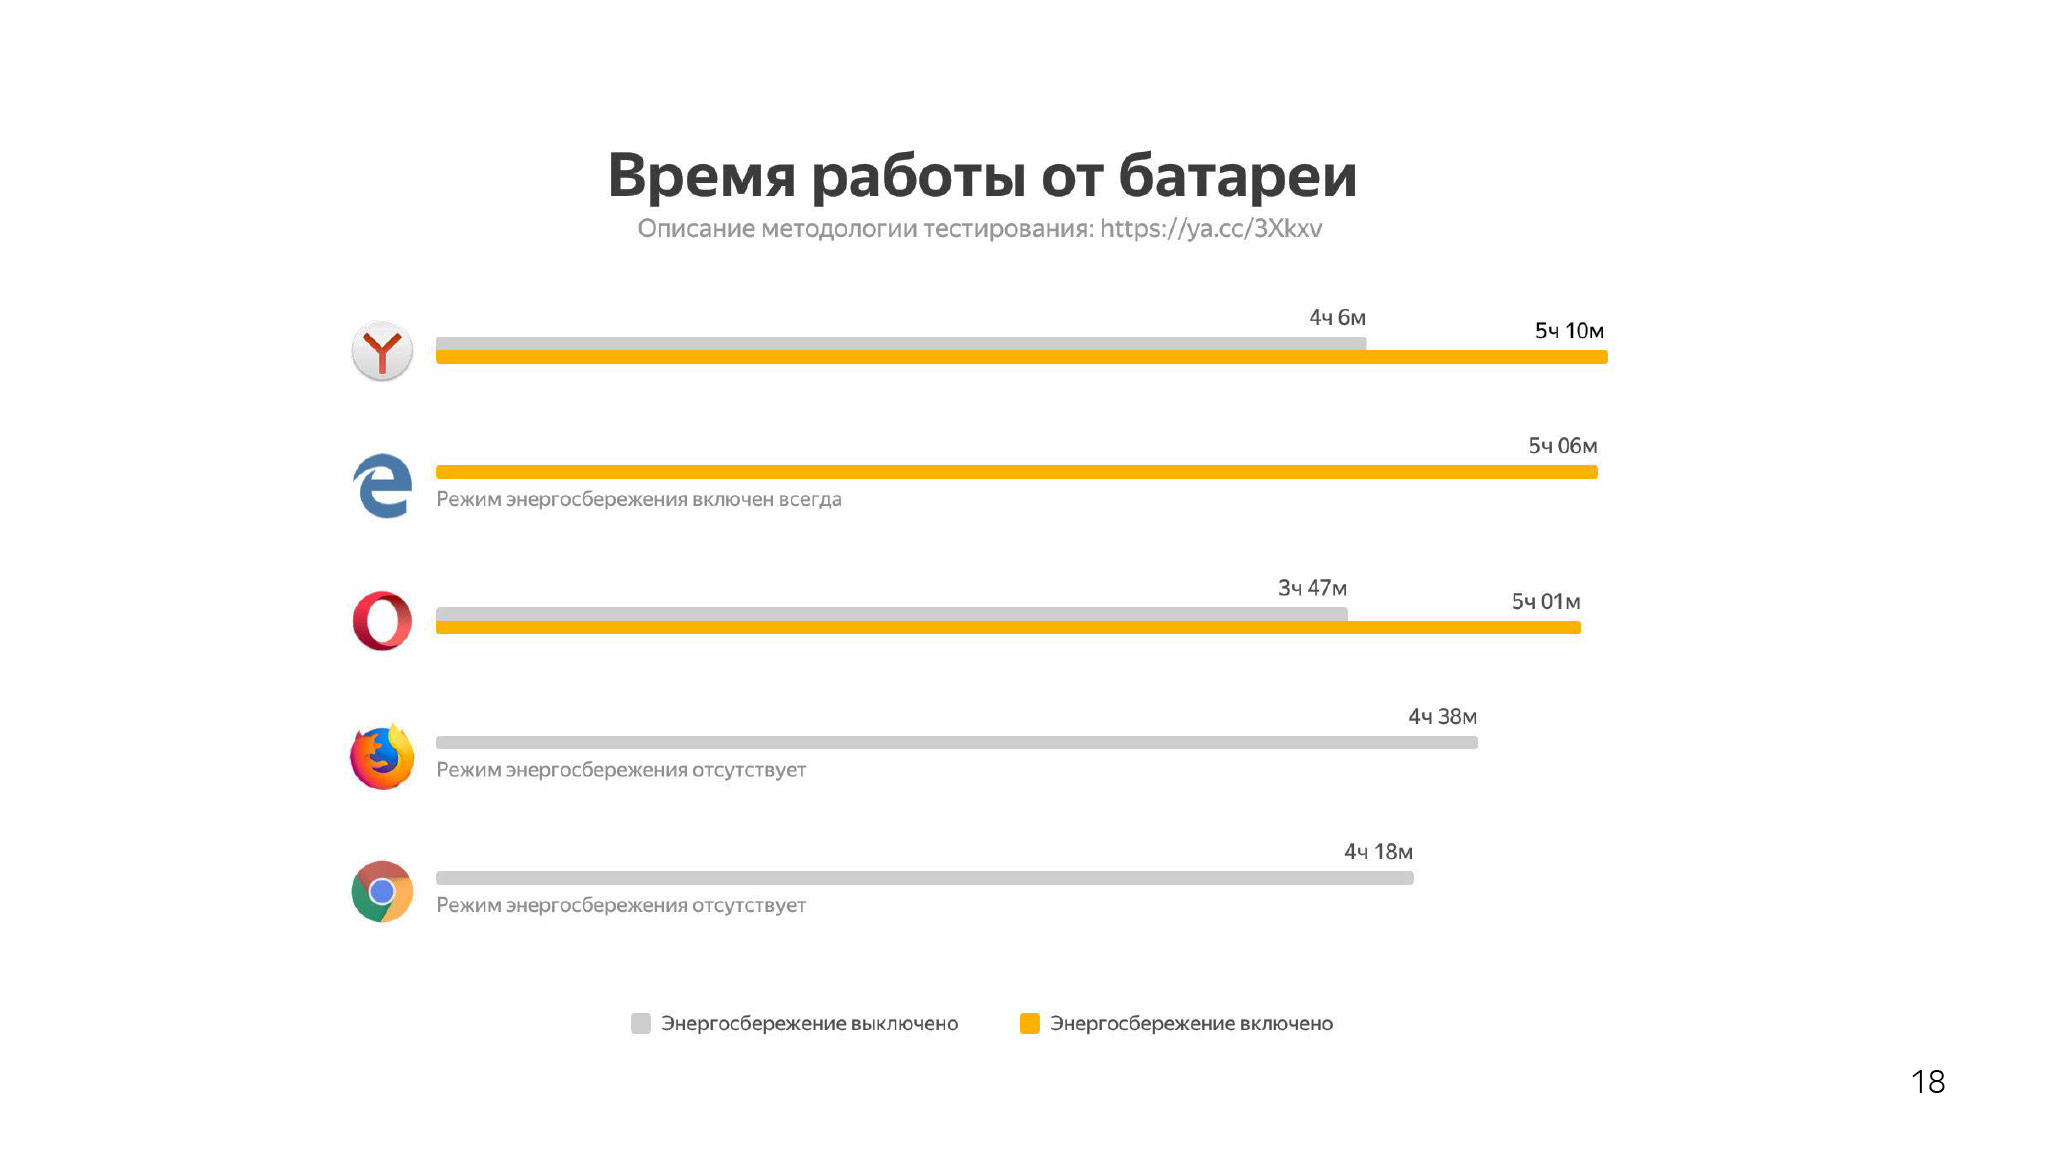 Как сэкономить ресурсы в браузере и не сломать веб. Доклад Яндекса - 6